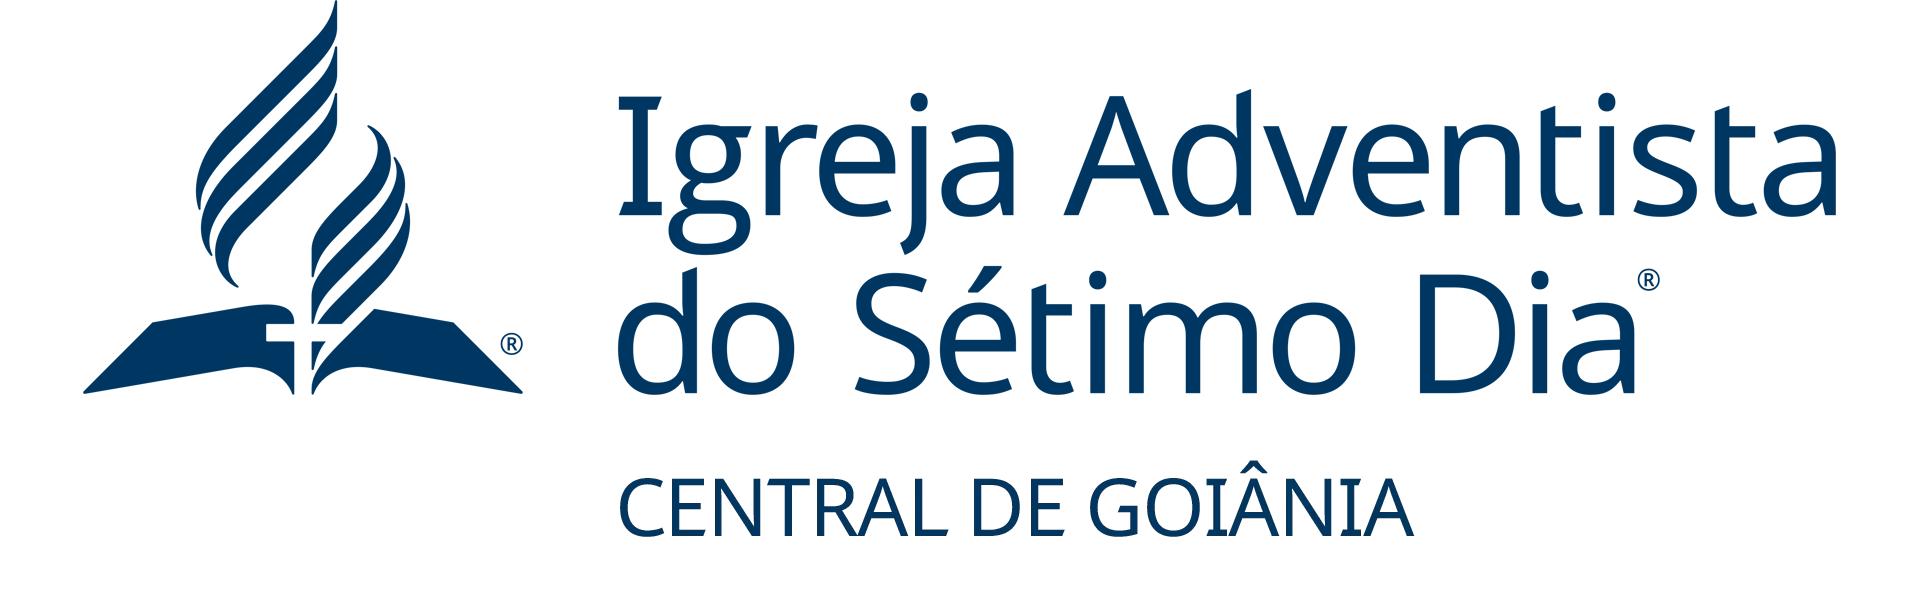 logo_IASD_Central_de_Goiania_h